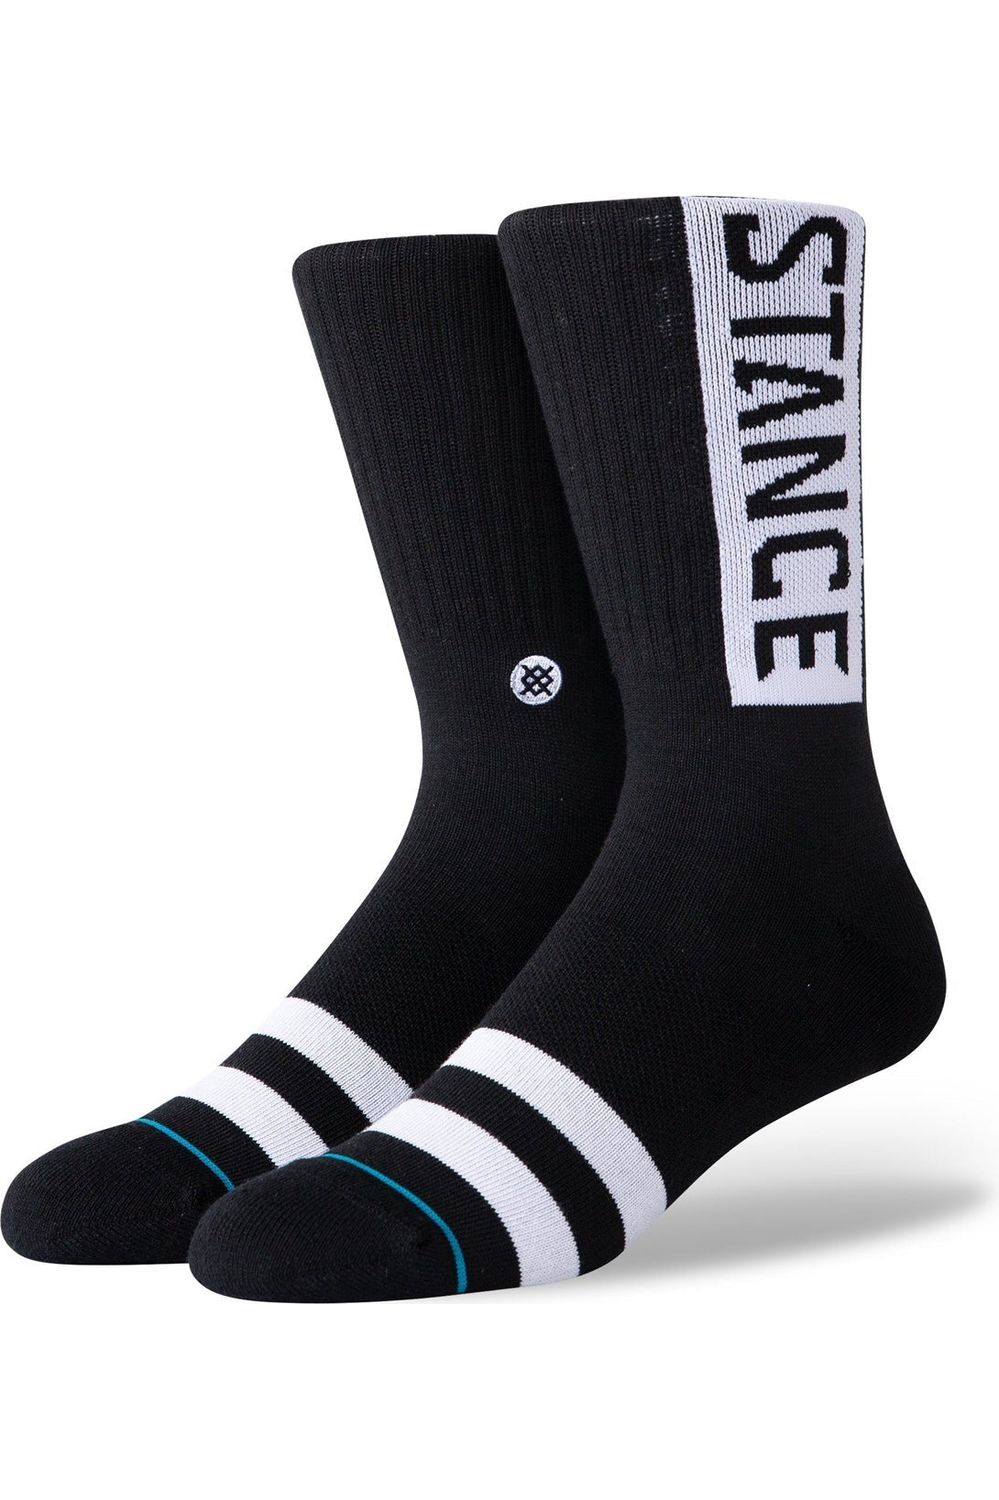 Stance Og Socks